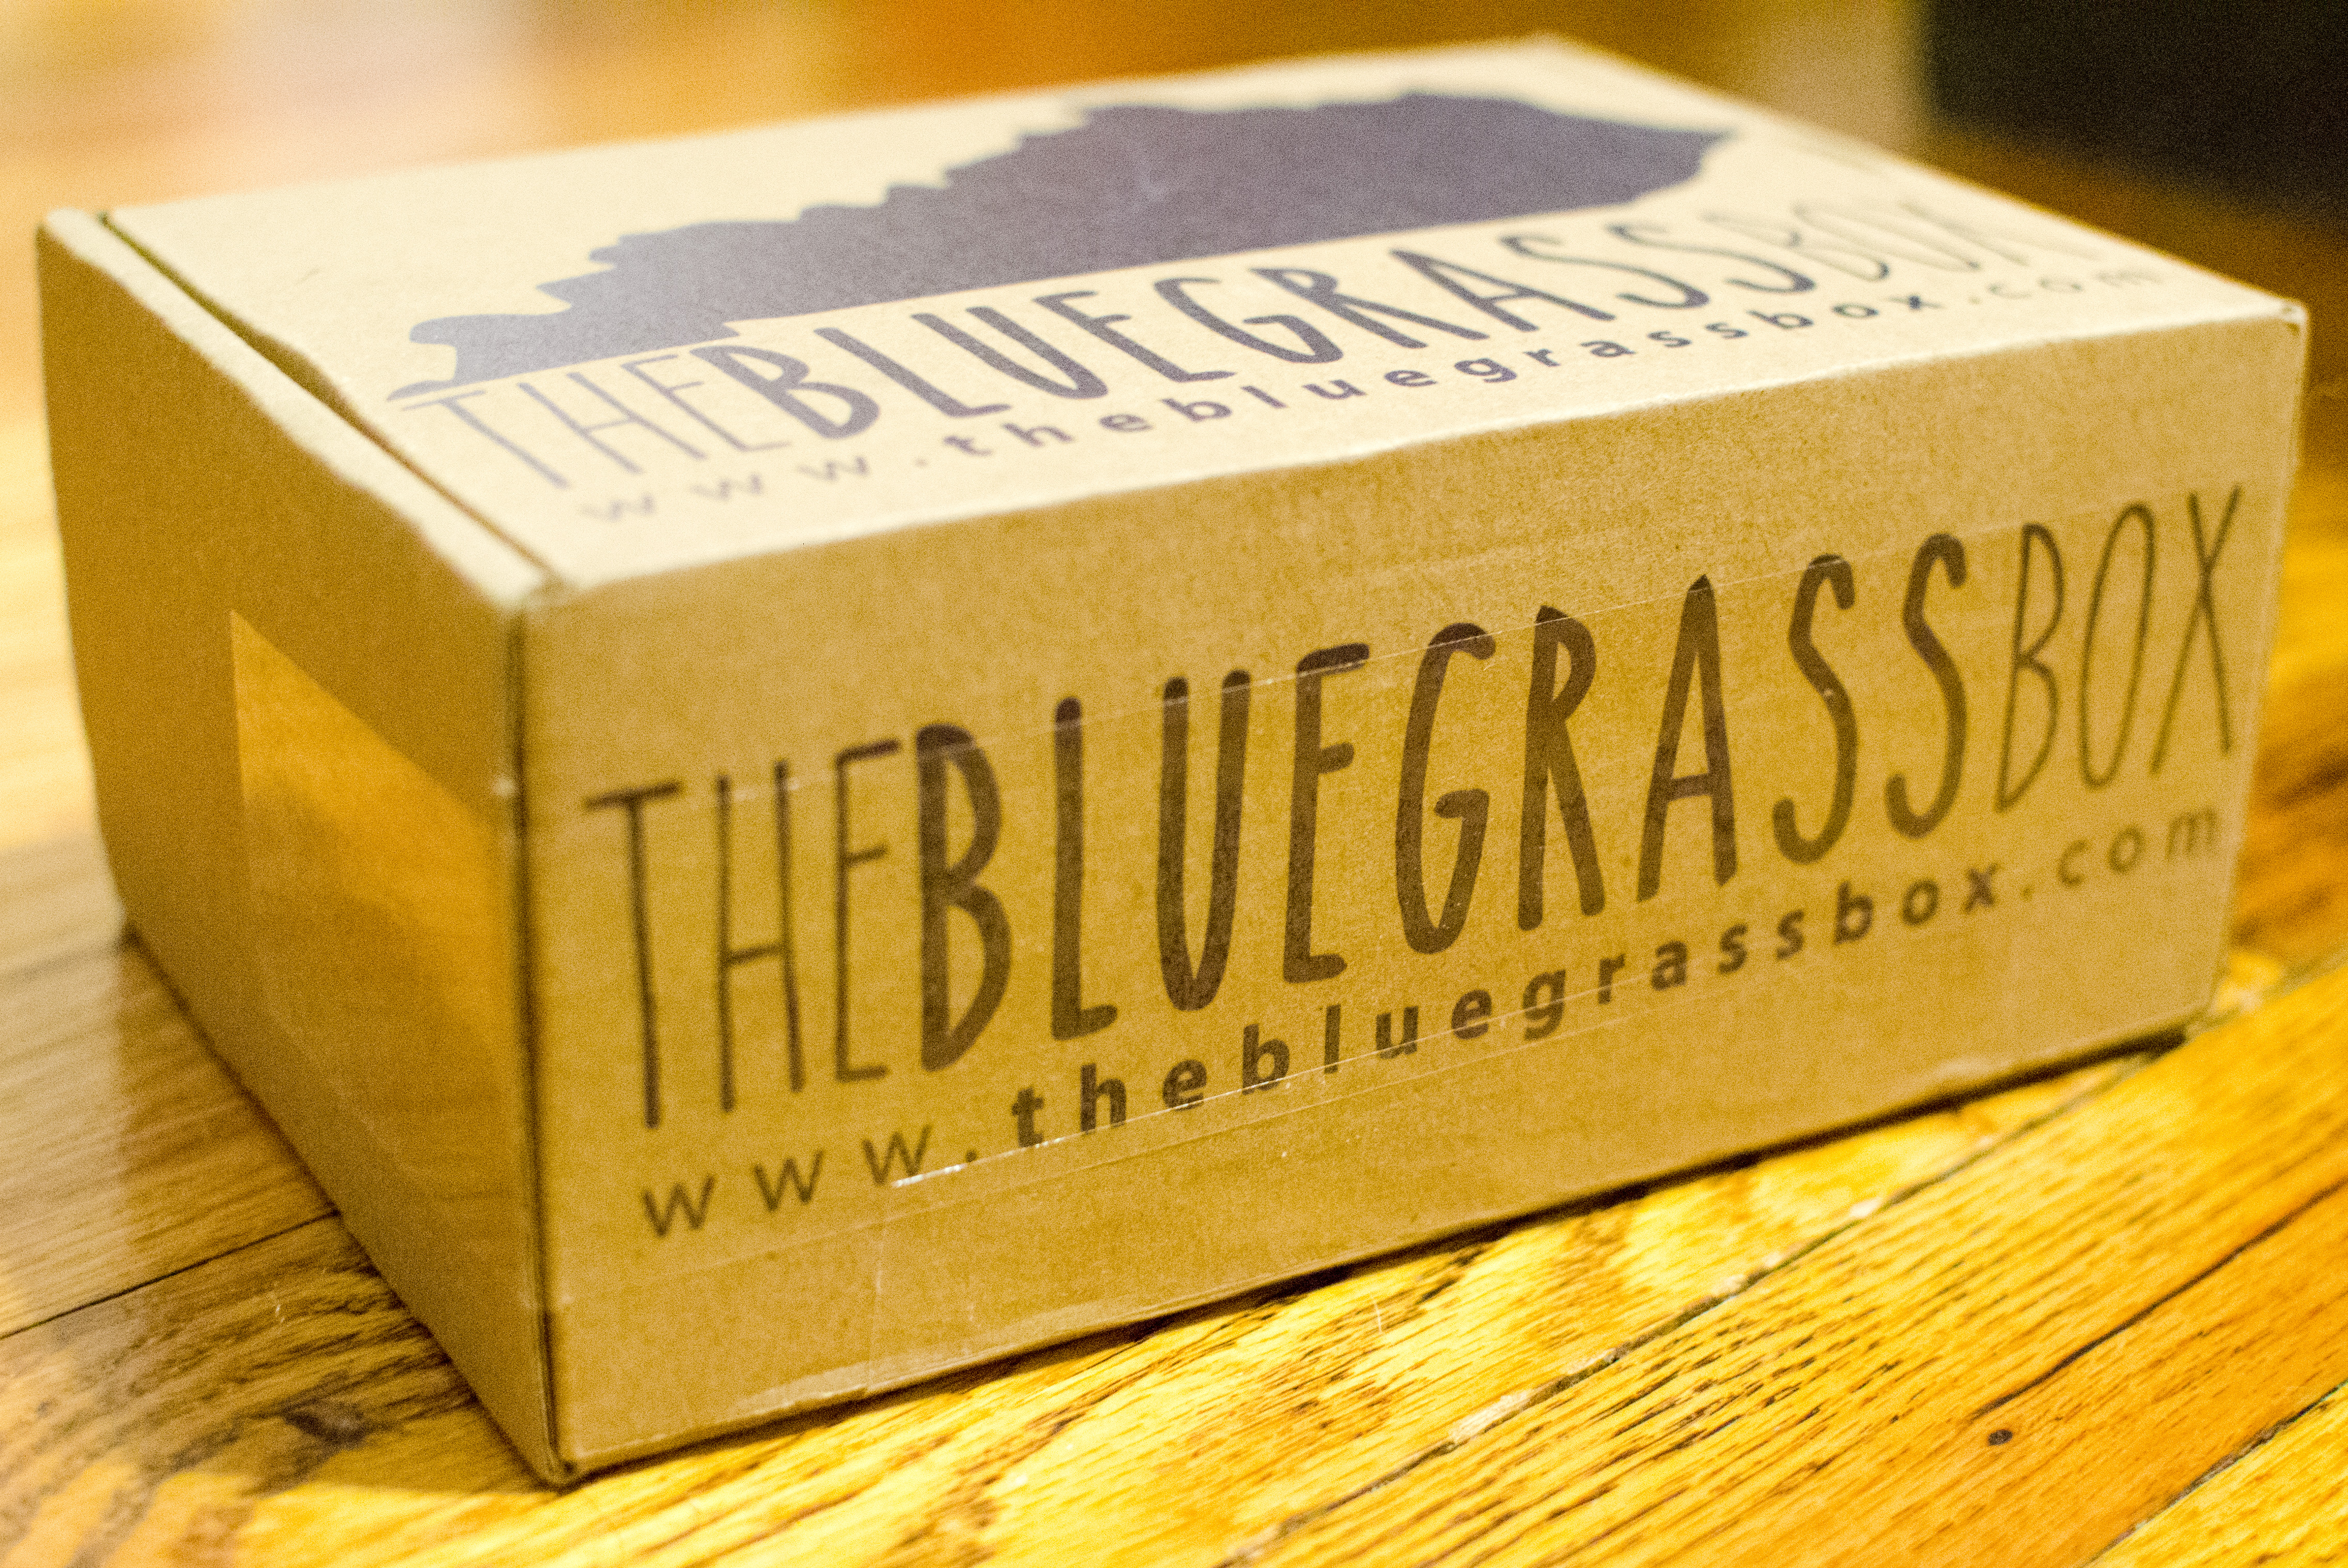 the bluegrass box